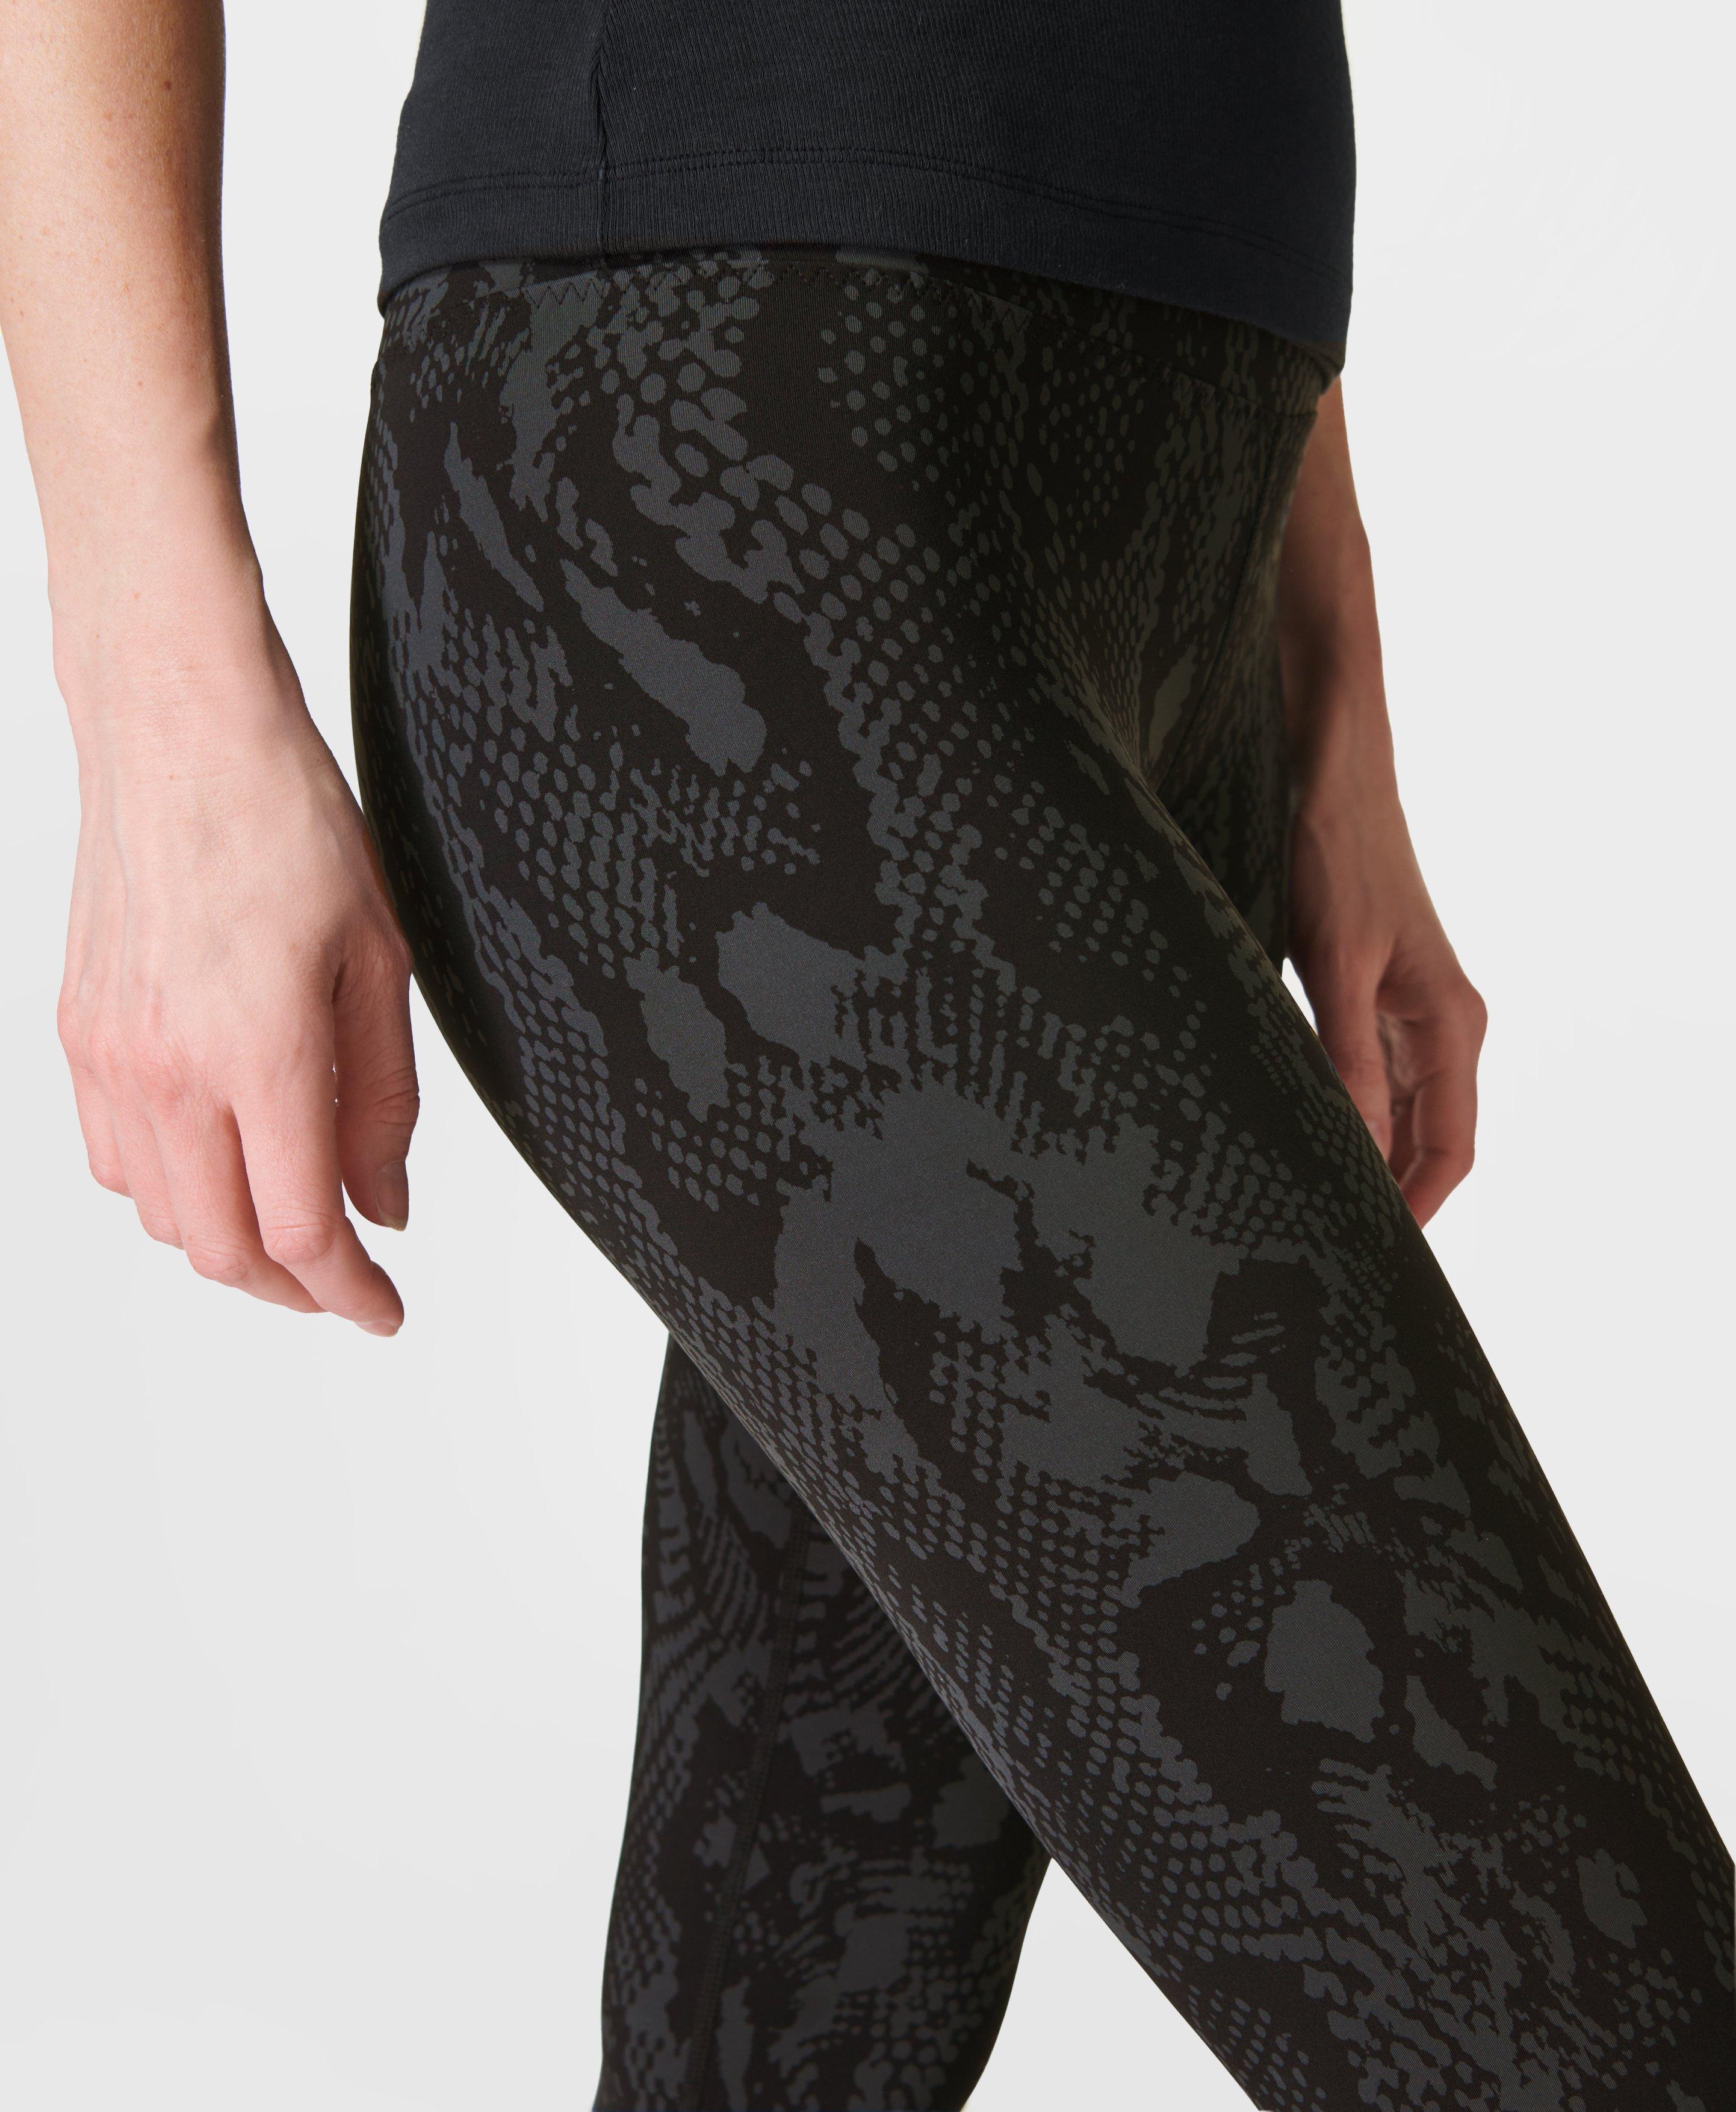 Orbit Stirrup Leggings - Black Snake Print, Women's Leggings